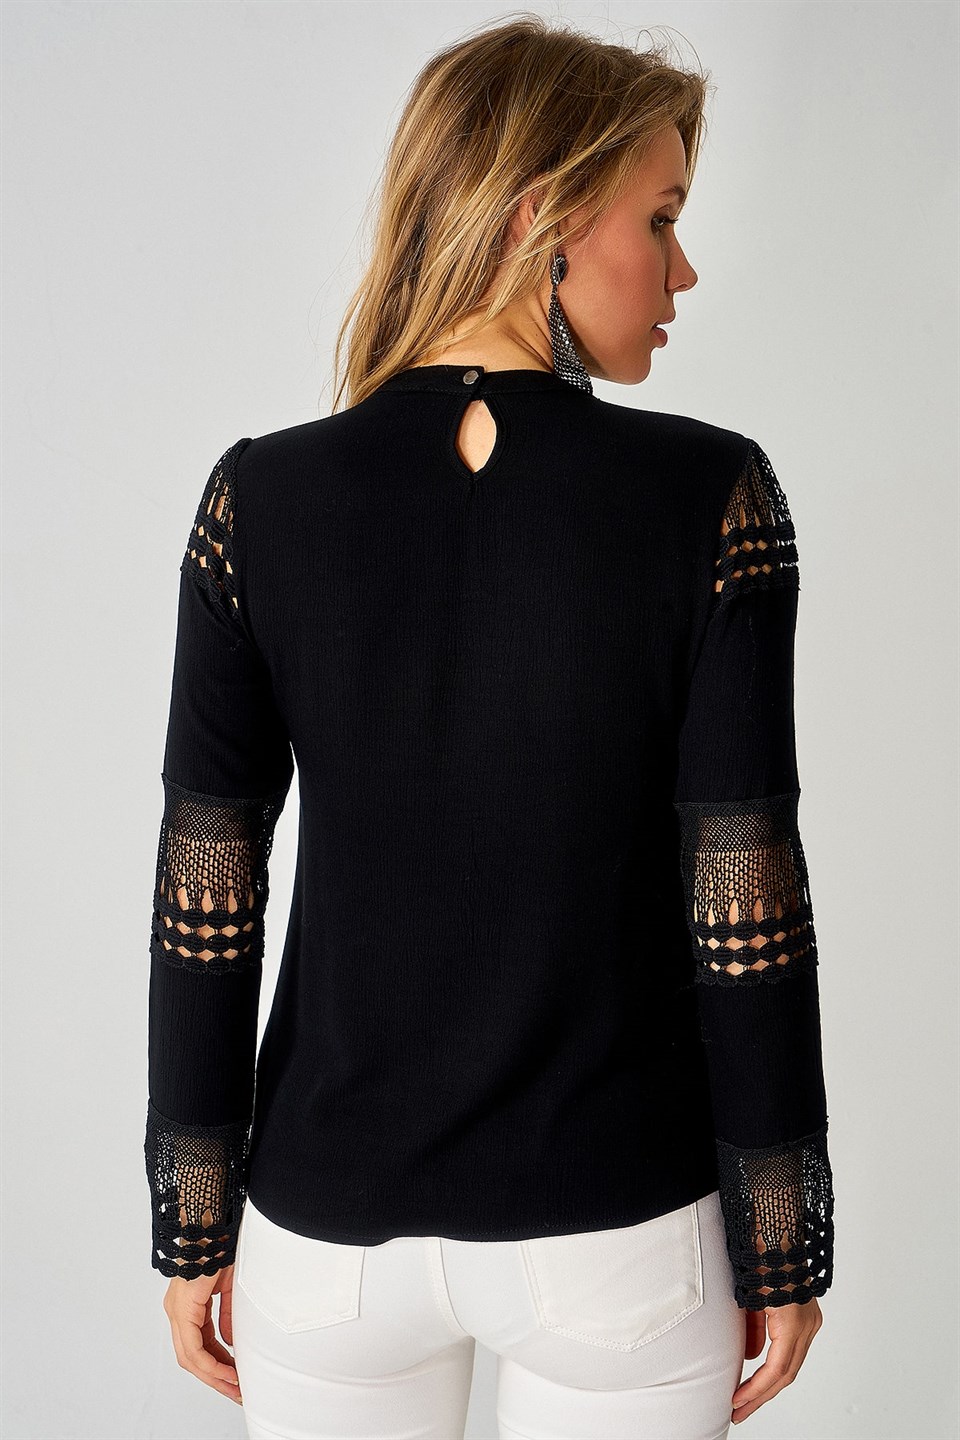 Kadın Dantel Ve Güpür Detaylı Siyah Bluz | aqefashion.com